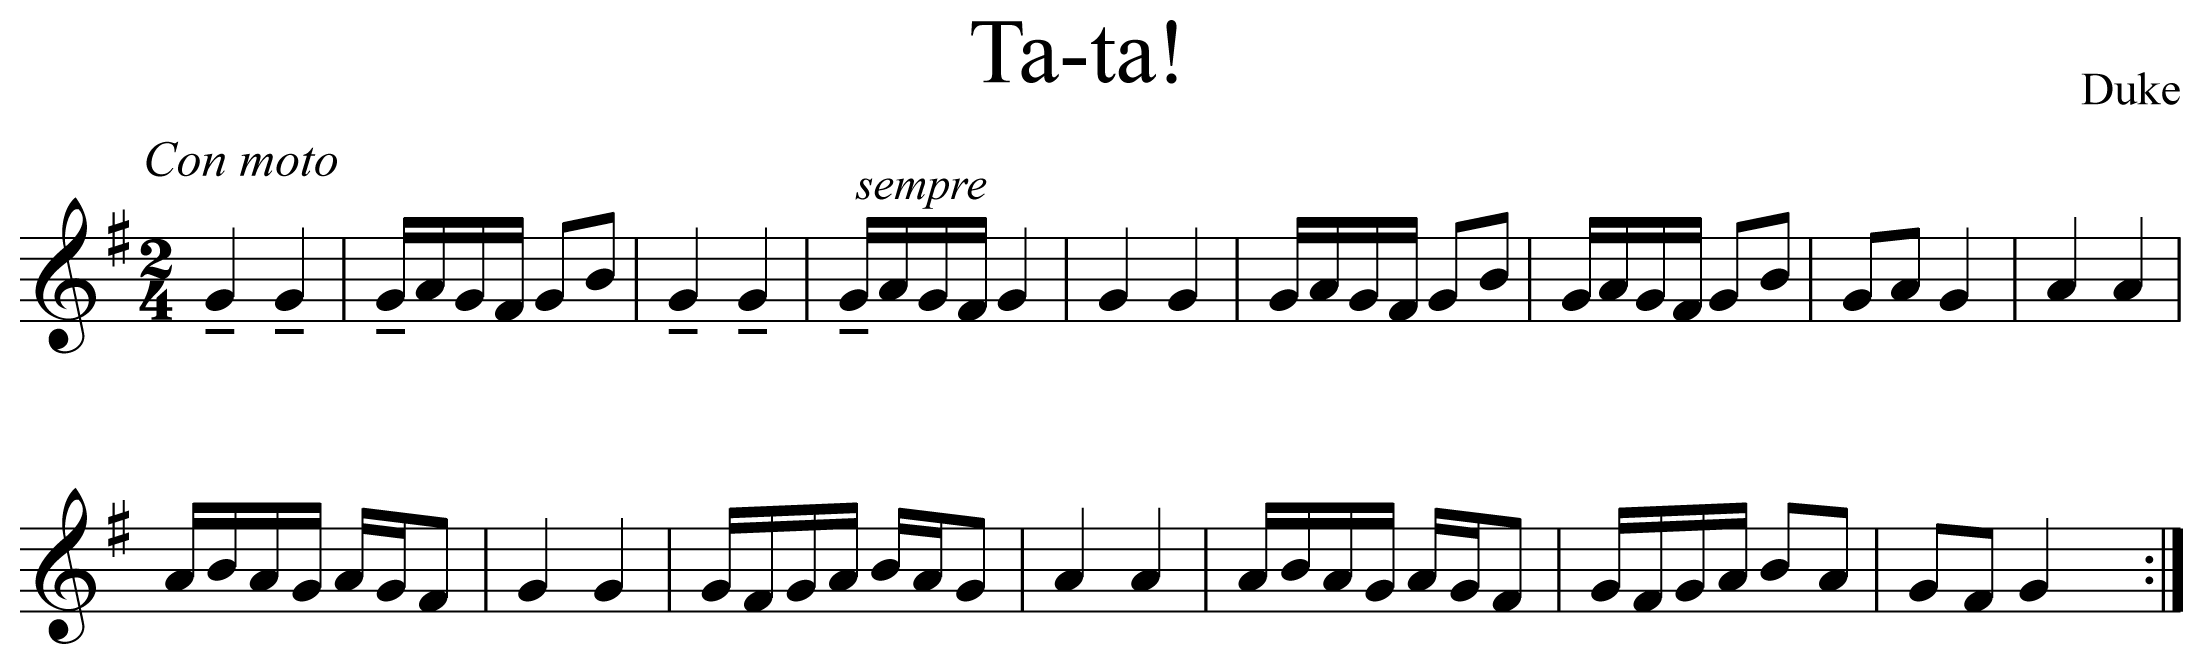 Ta-ta! Notation Trumpet